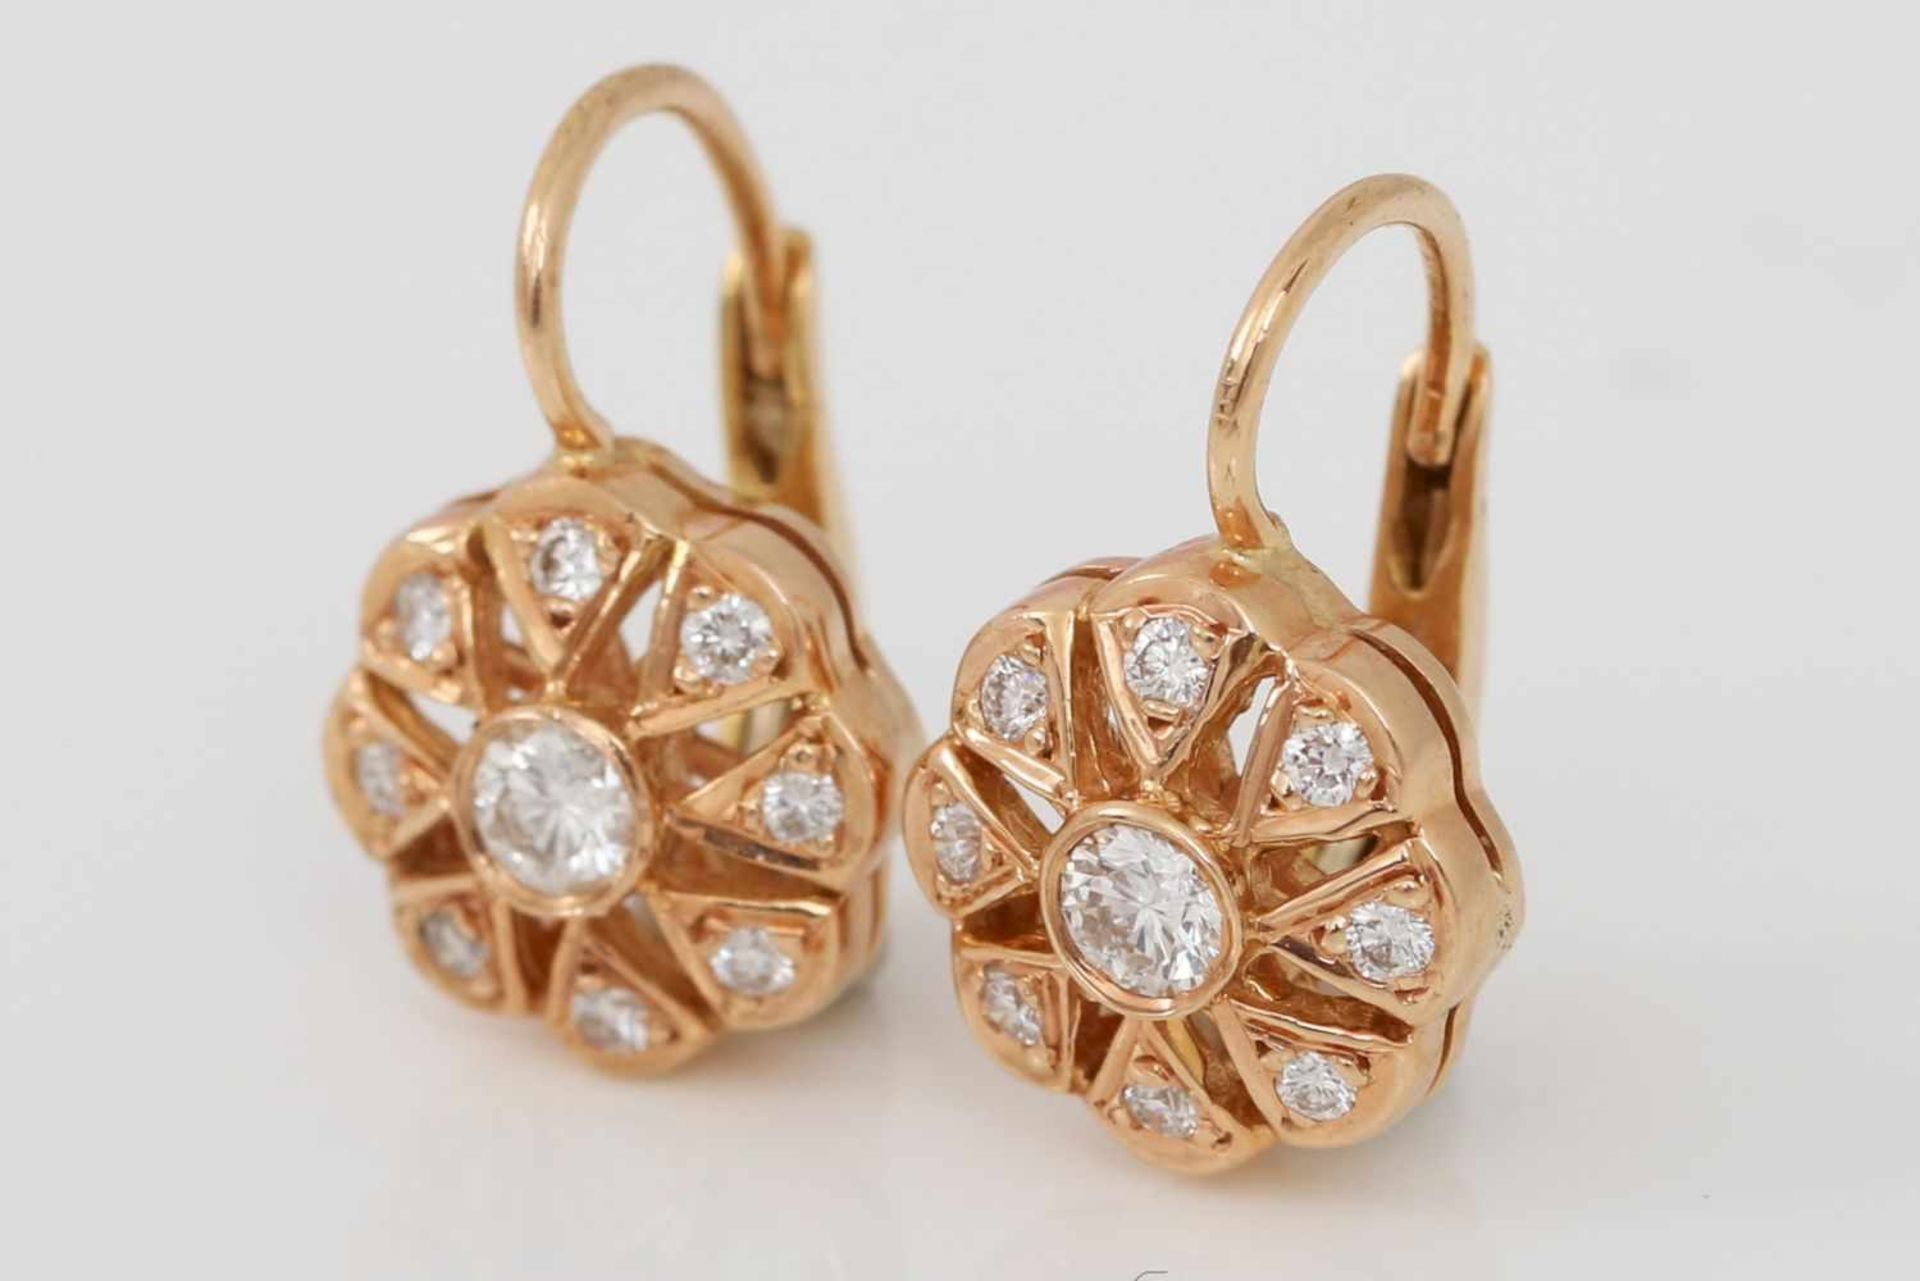 Paar Ohrhänger18K Rotgold und 8 Diamanten, mittig ein Brillant (ca. 0,08ct.), Blütenform, L ca. 1,